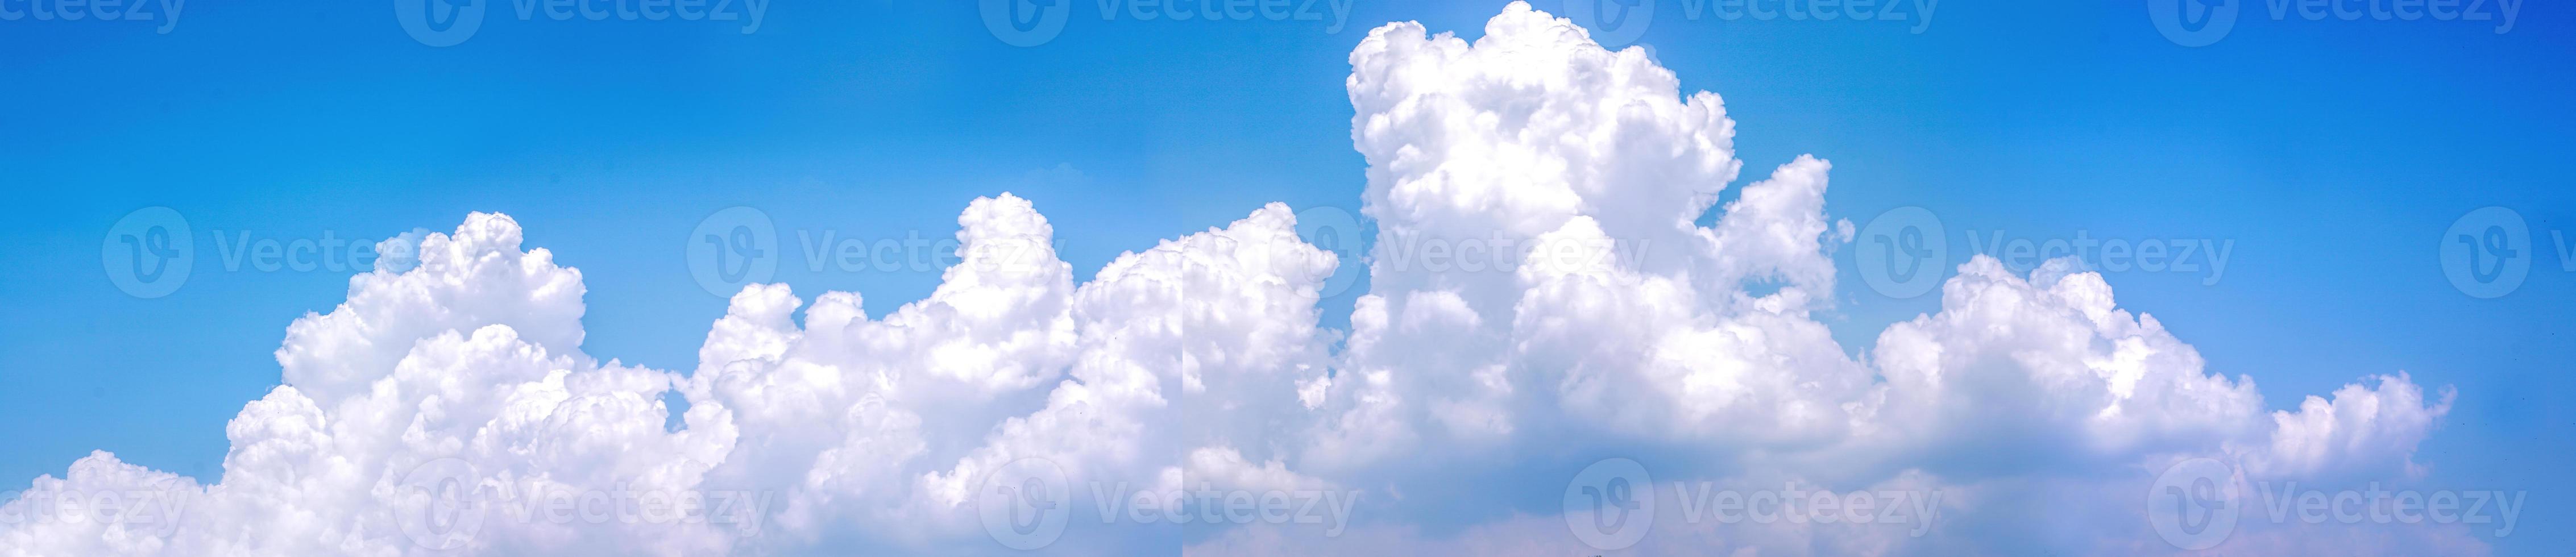 panoramautsikt över bomull vitt moln och klarblå himmel. foto